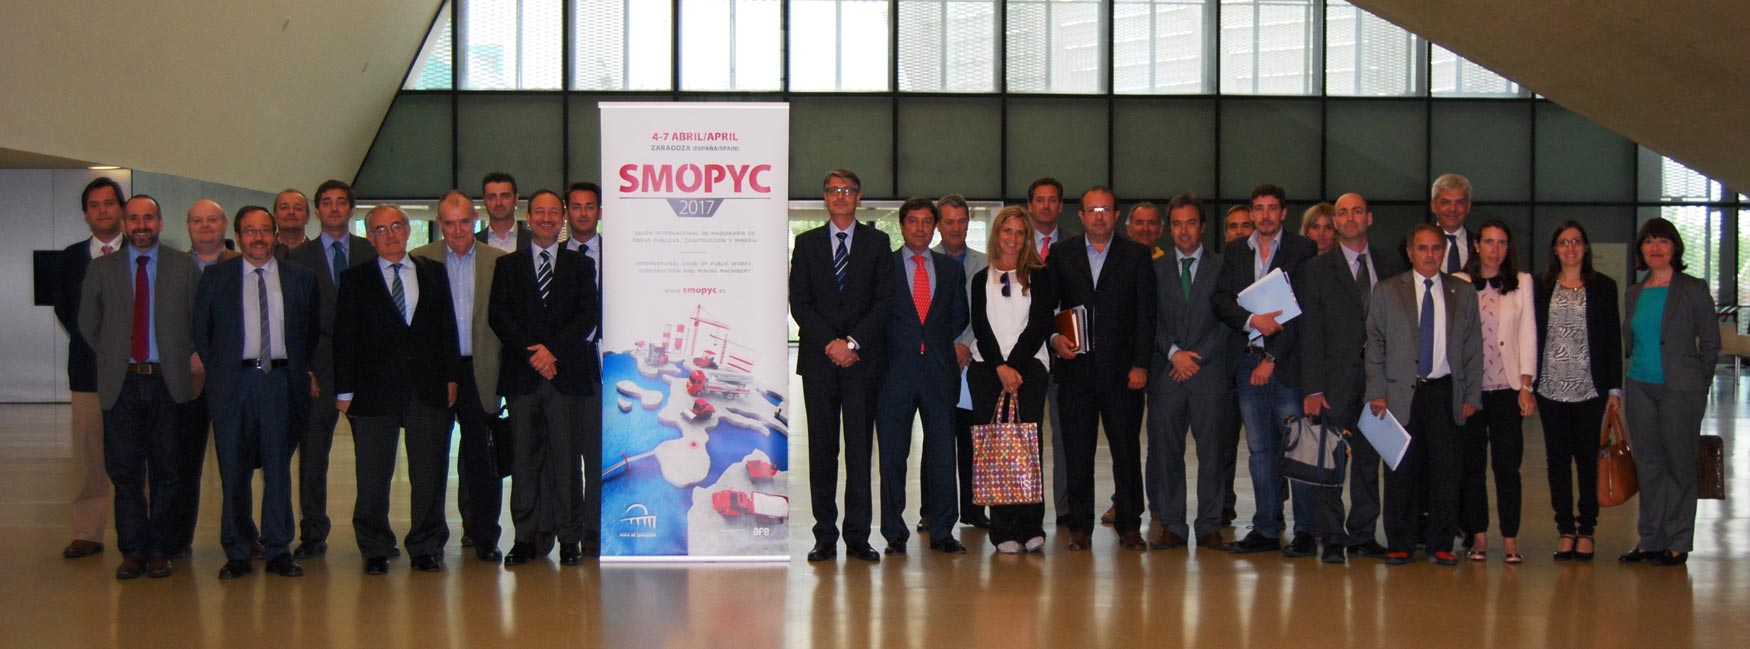 Foto de grupo con los miembros del Comit Organizador de Smopyc 2017